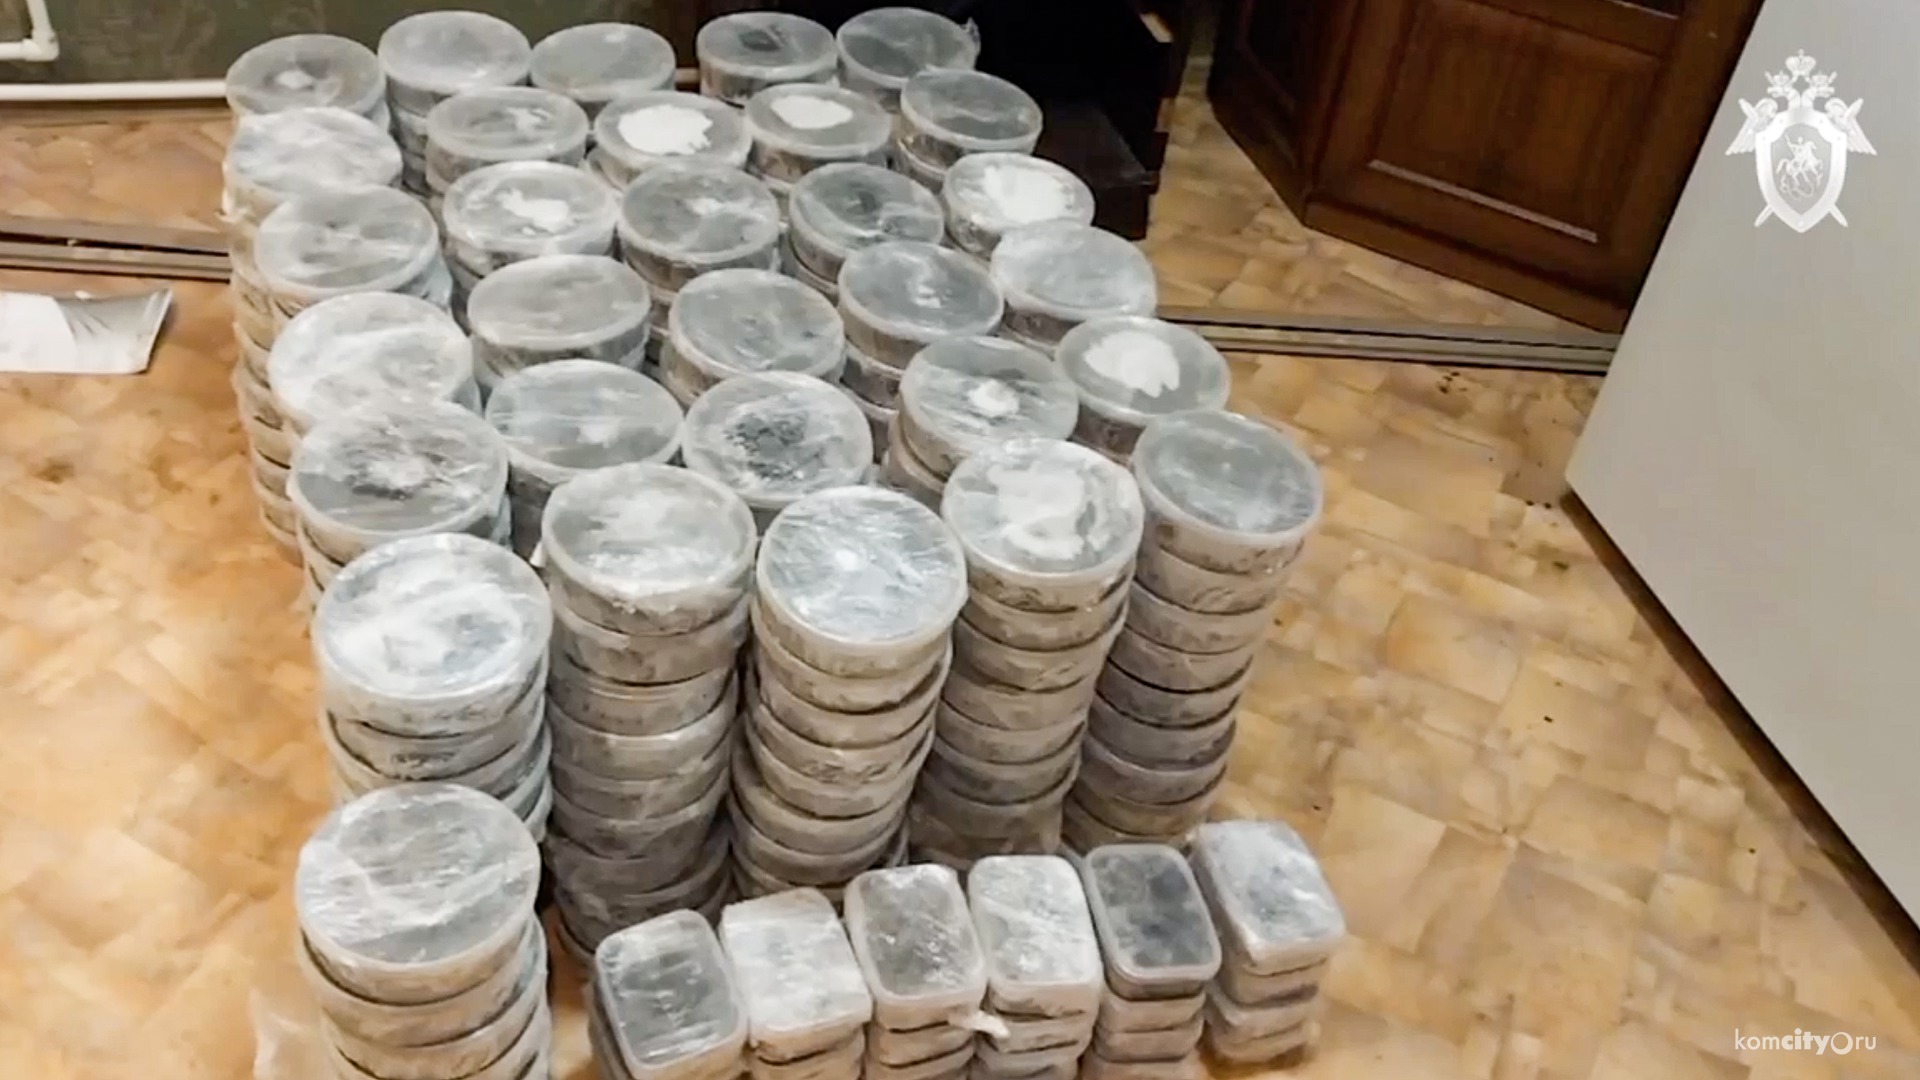 200 кг чёрной икры нашли в гараже жителя Комсомольска-на-Амуре 